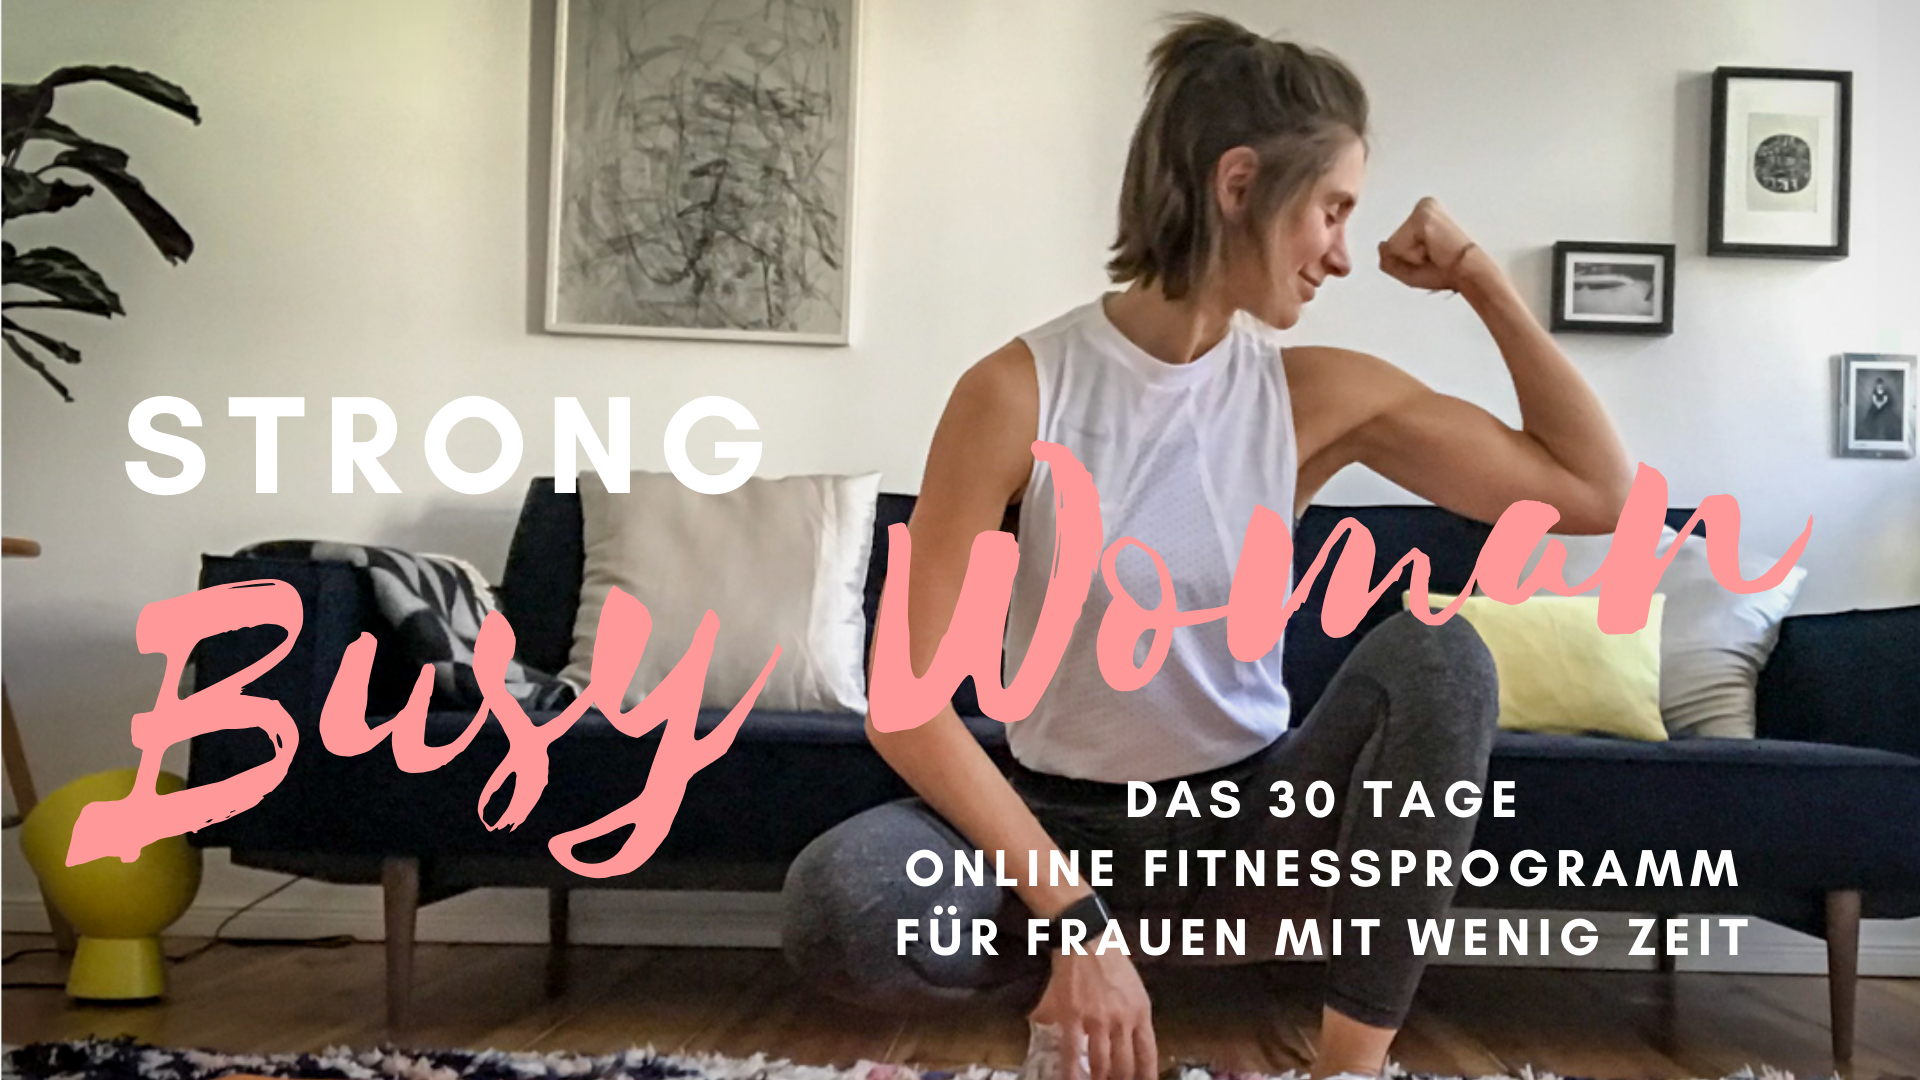 STRONG BUSY WOMAN - das Online Fitnessprogramm für Frauen mit wenig Zeit